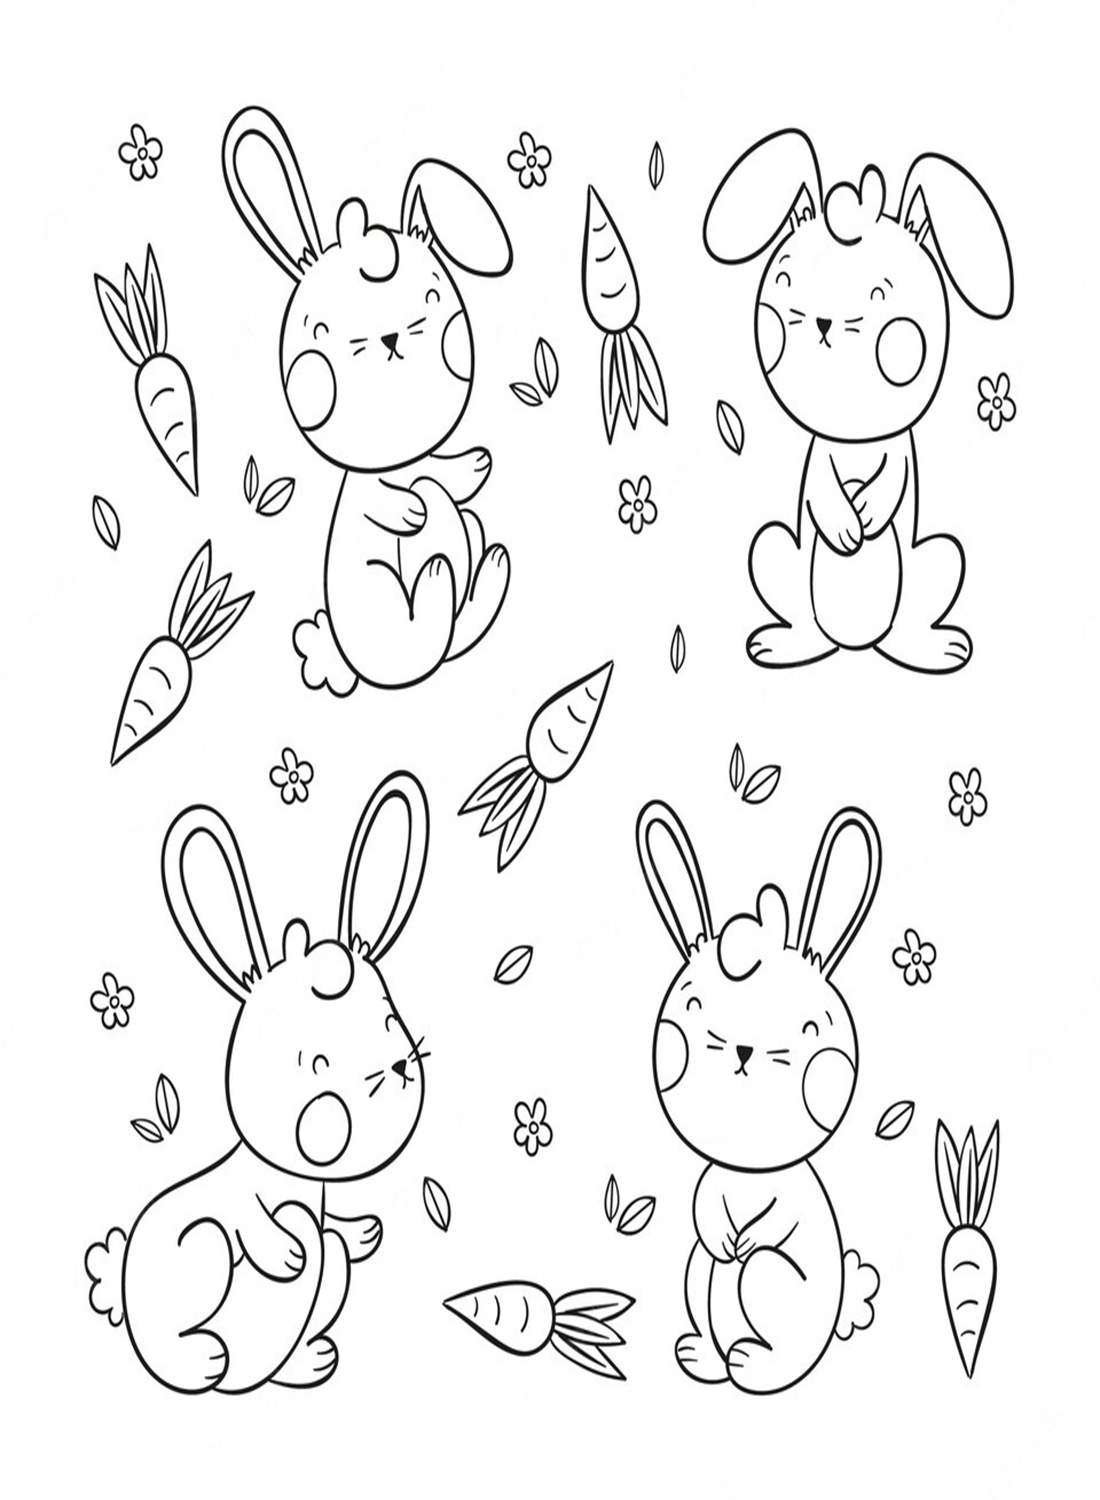 Милые позы кроликов от Rabbit